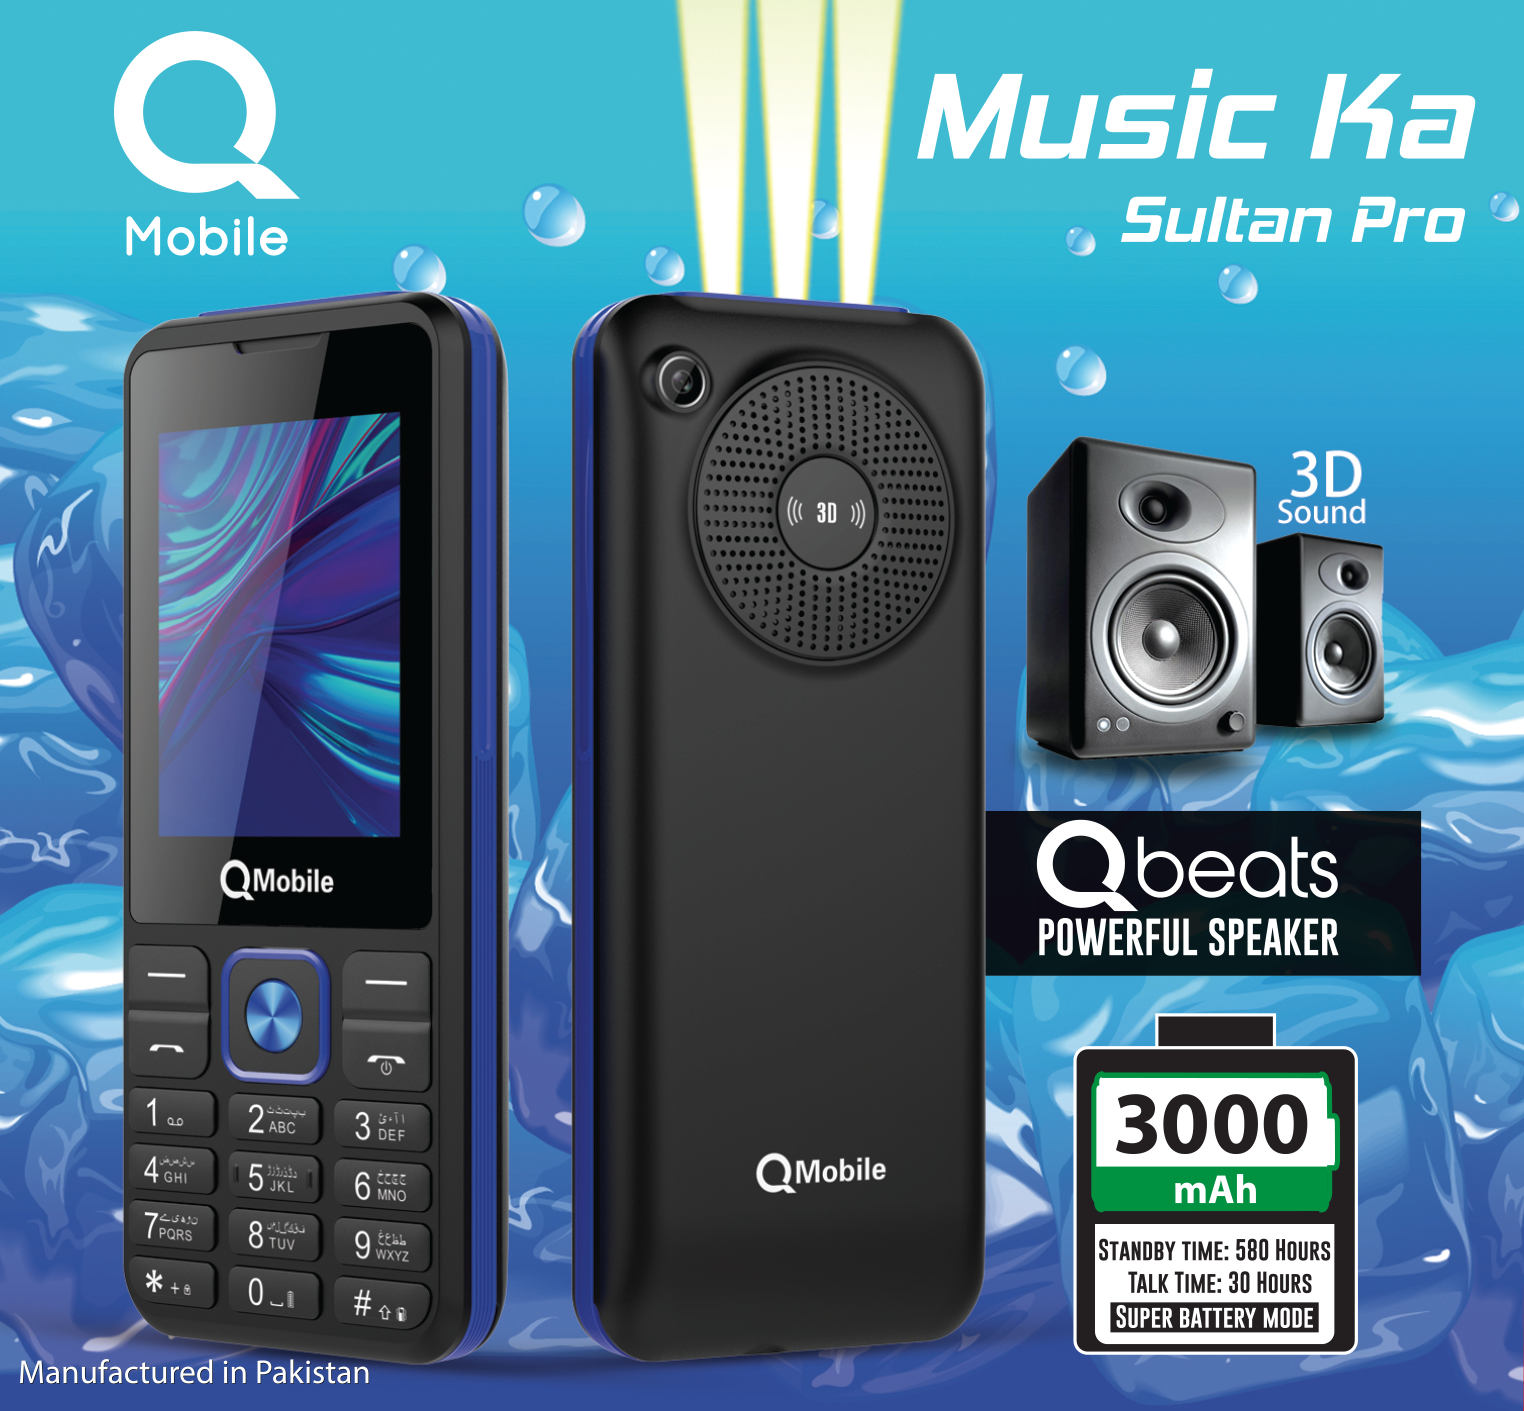 QMobile Music Ka Sultan Pro Description